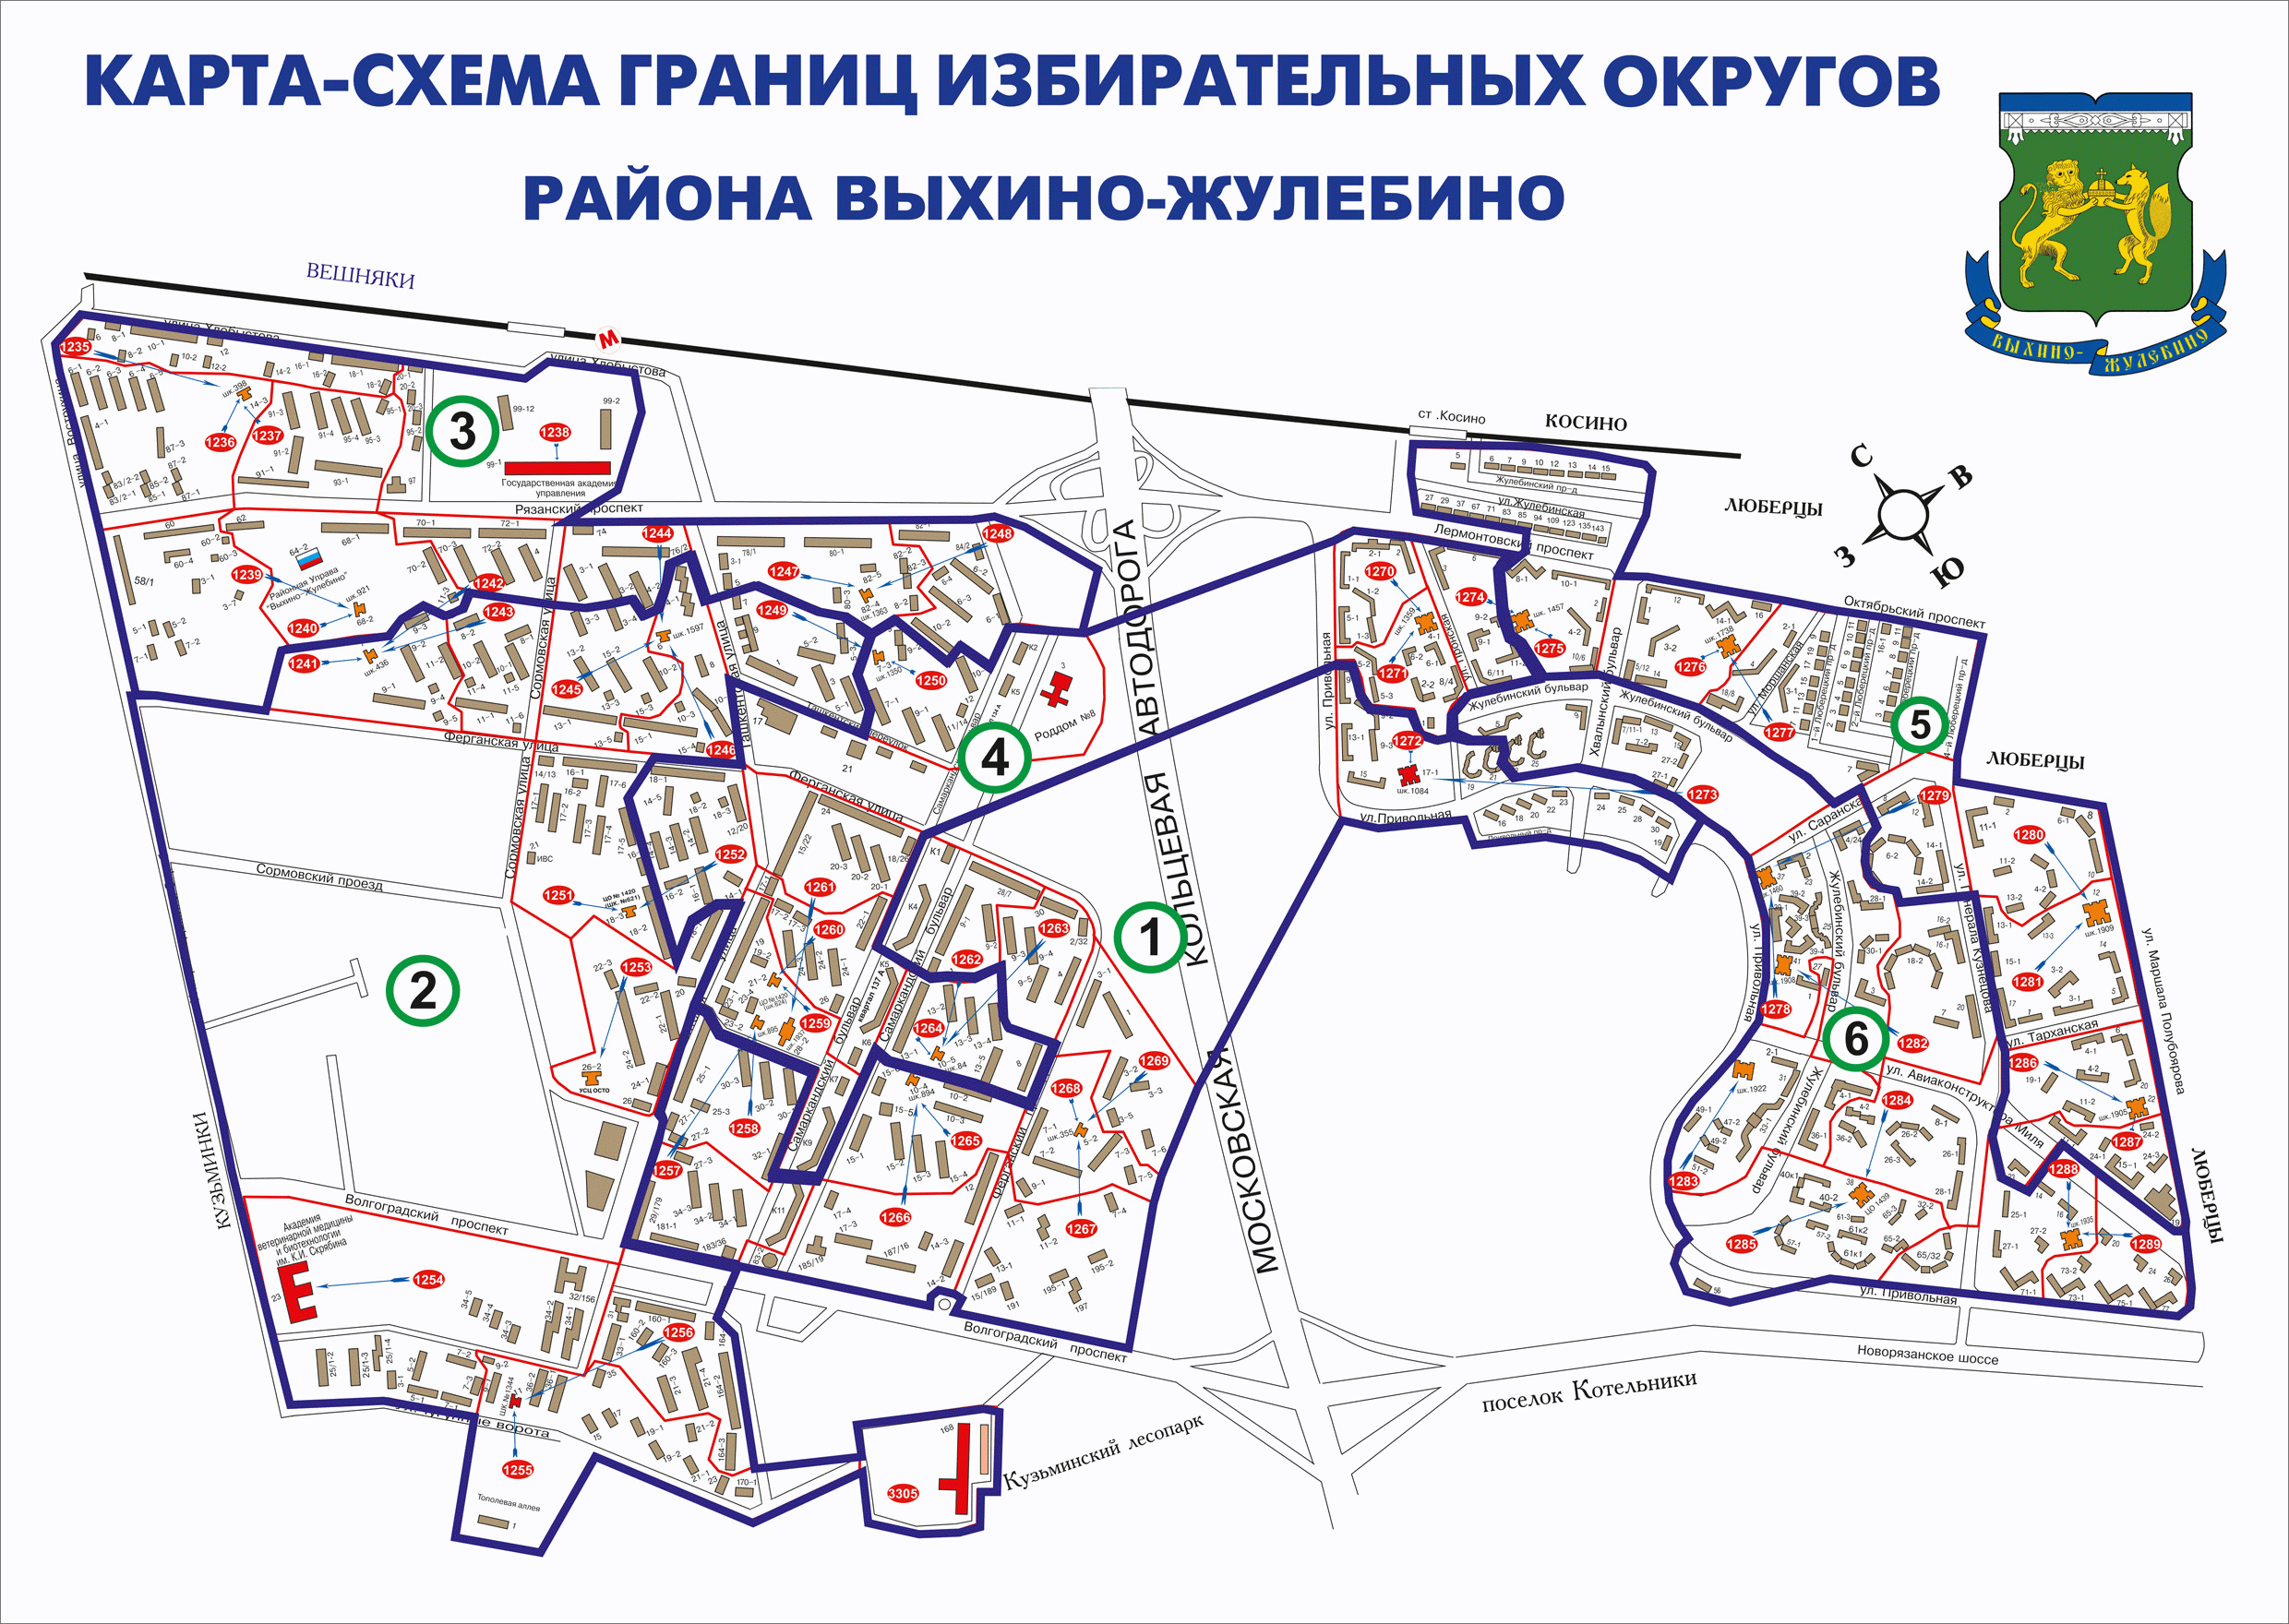 Район Выхино-Жулебино на карте. Схема района Выхино-Жулебино. Выхино-Жулебино район карта с улицами. Границы района Выхино-Жулебино на карте Москвы.